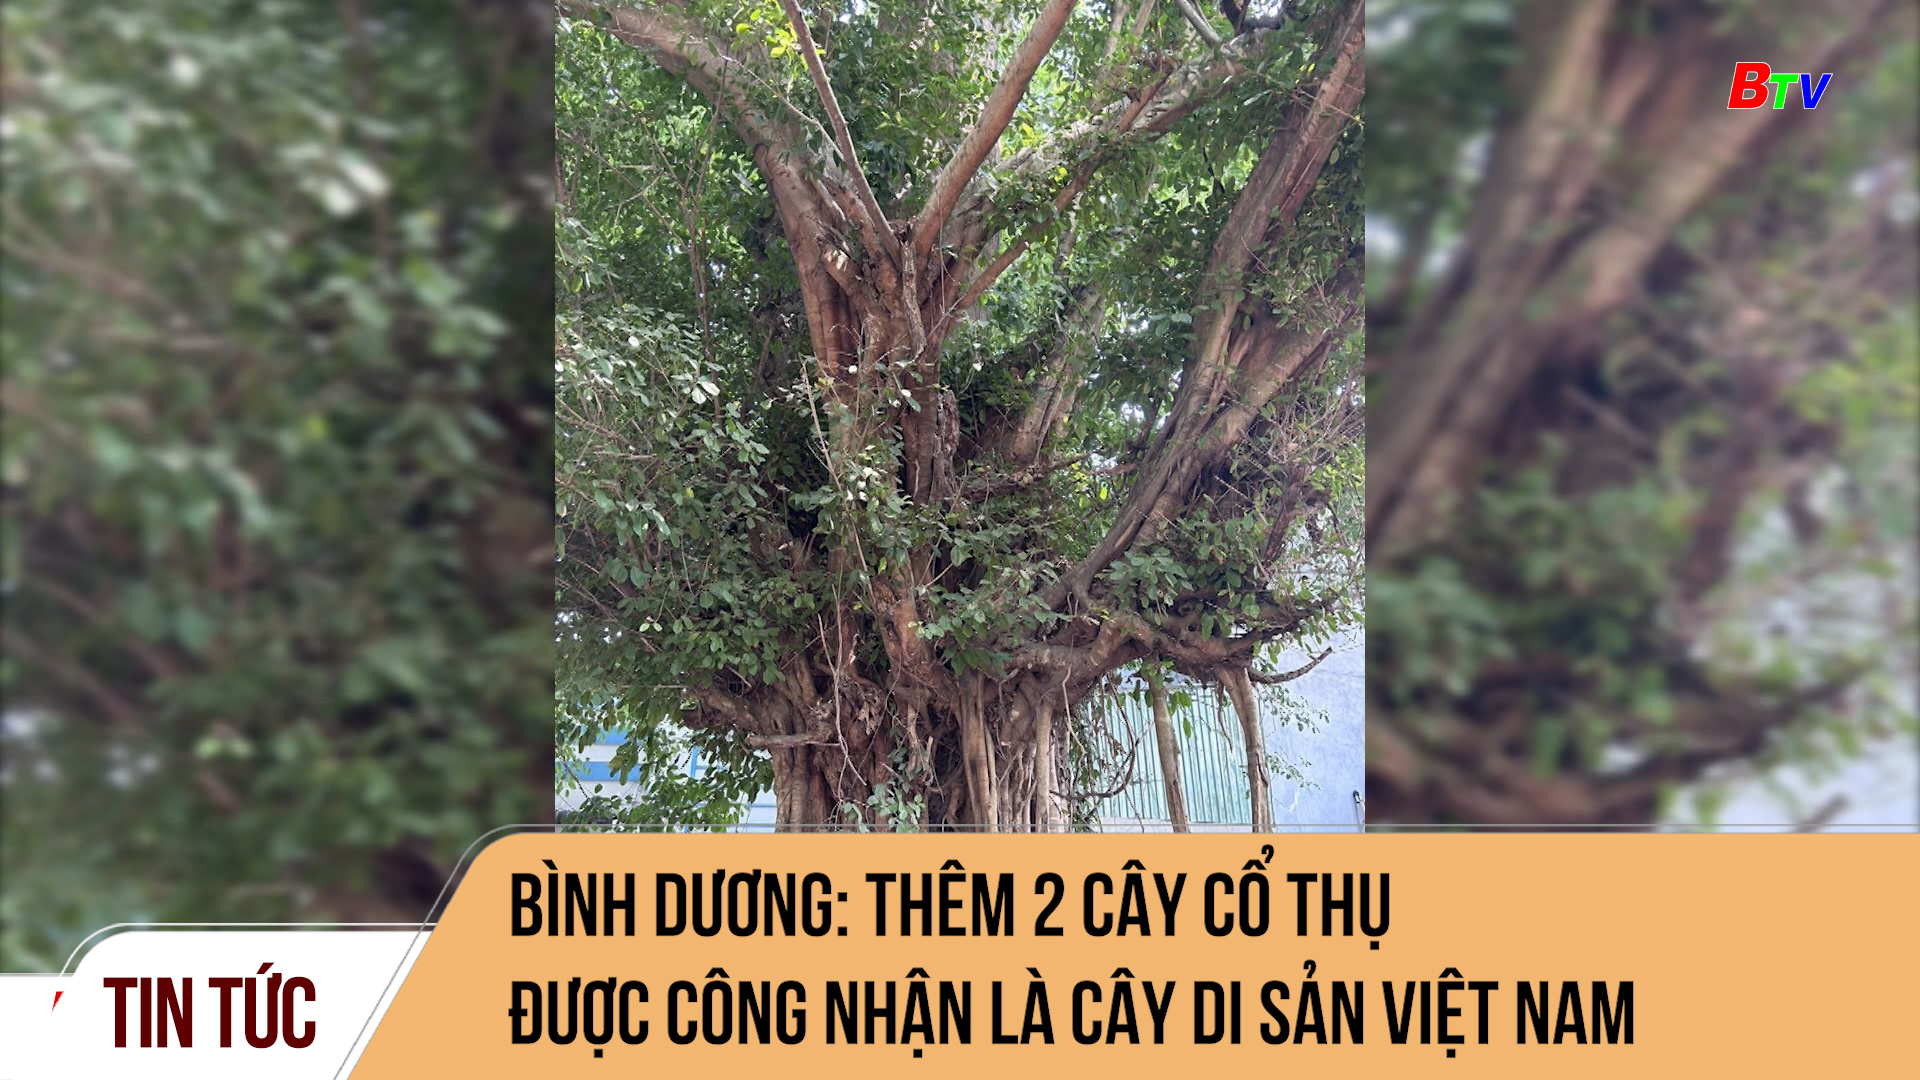 Bình dương: Thêm 2 cây cổ thụ được công nhận là cây di sản Việt Nam